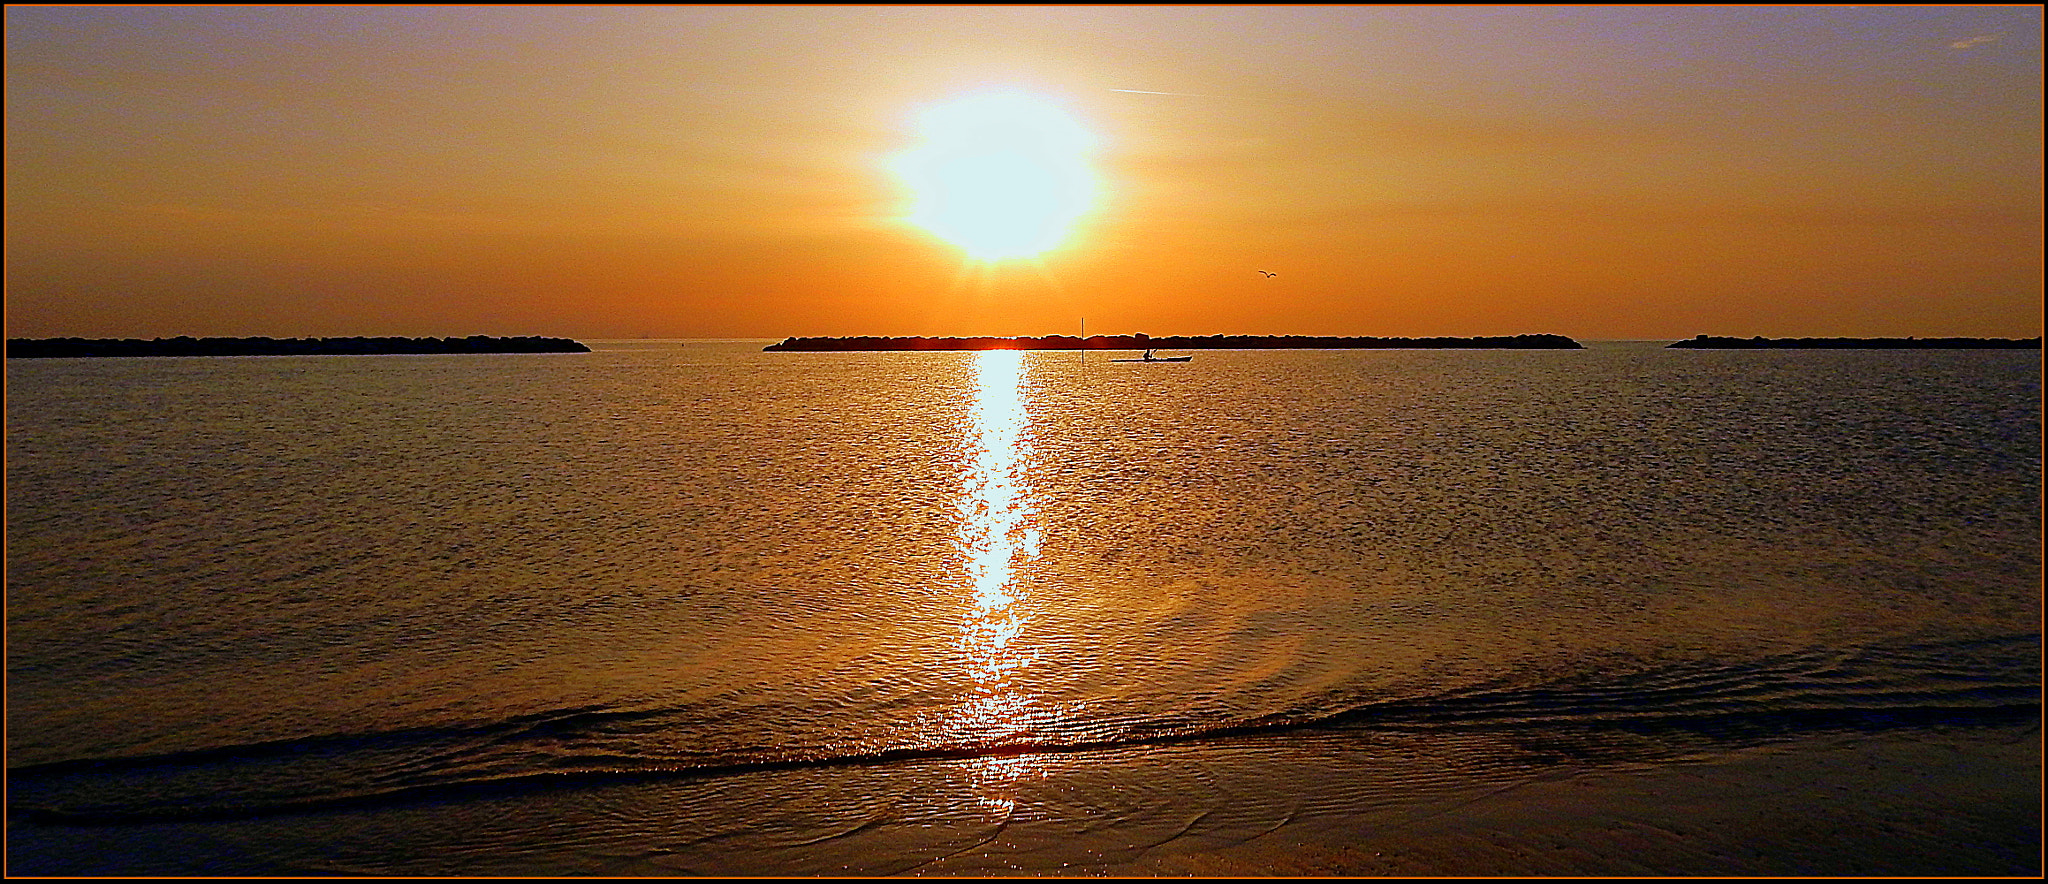 Nikon Coolpix S9700 sample photo. Il solitario con la canoa, sotto il sole dell'alba. photography